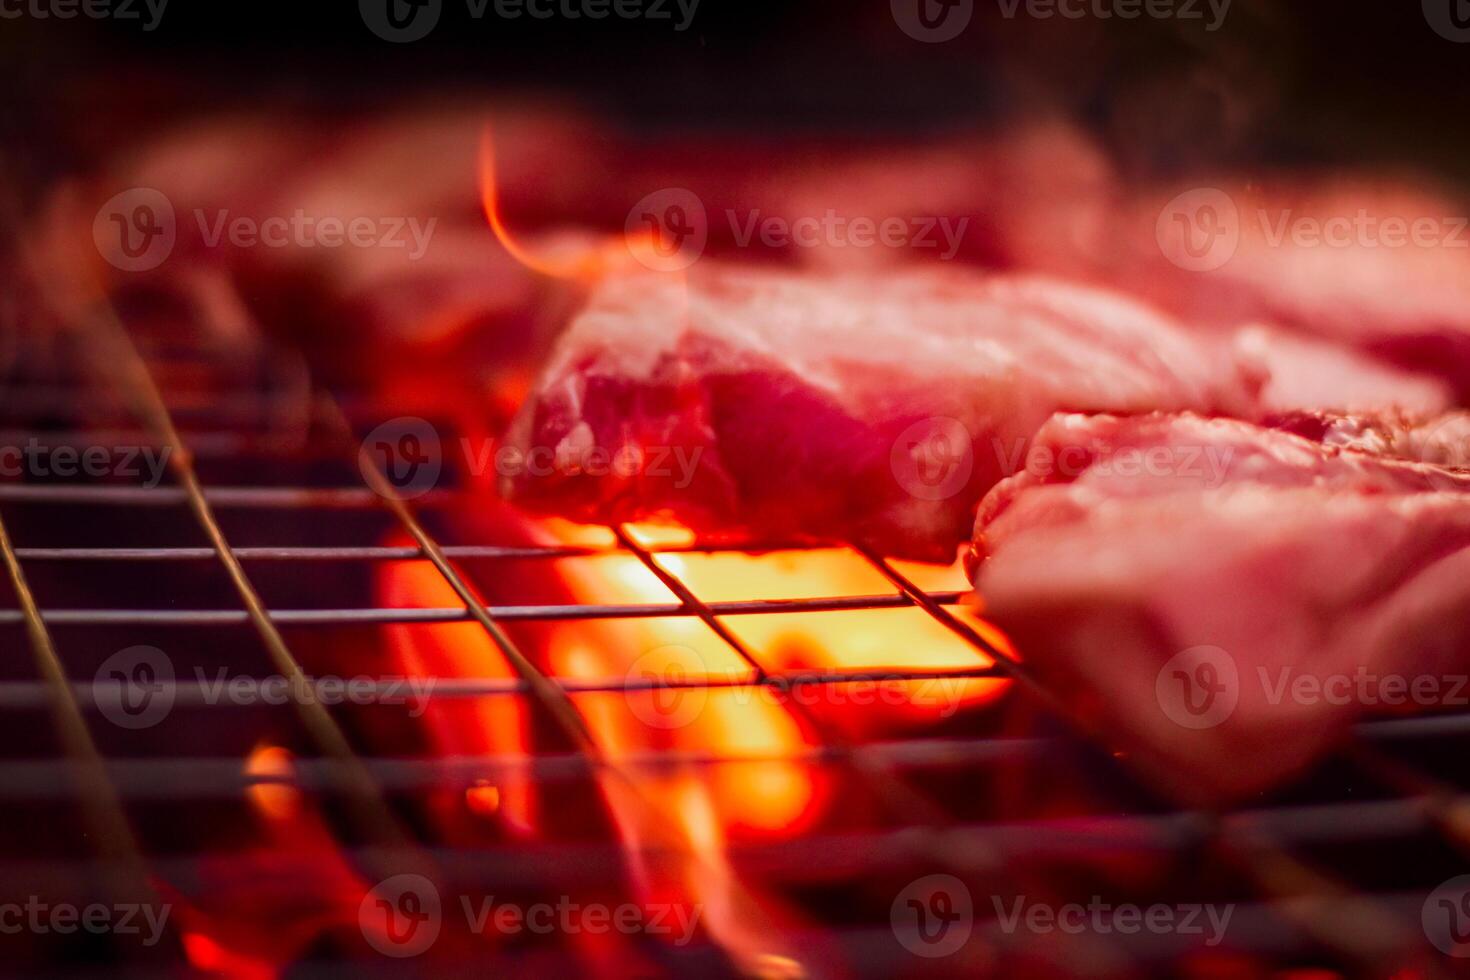 grillning fläsk på rostfri stål grill med lågor på svart bakgrund, mat och kök begrepp. brinnande fläsk på en träkol grill. foto